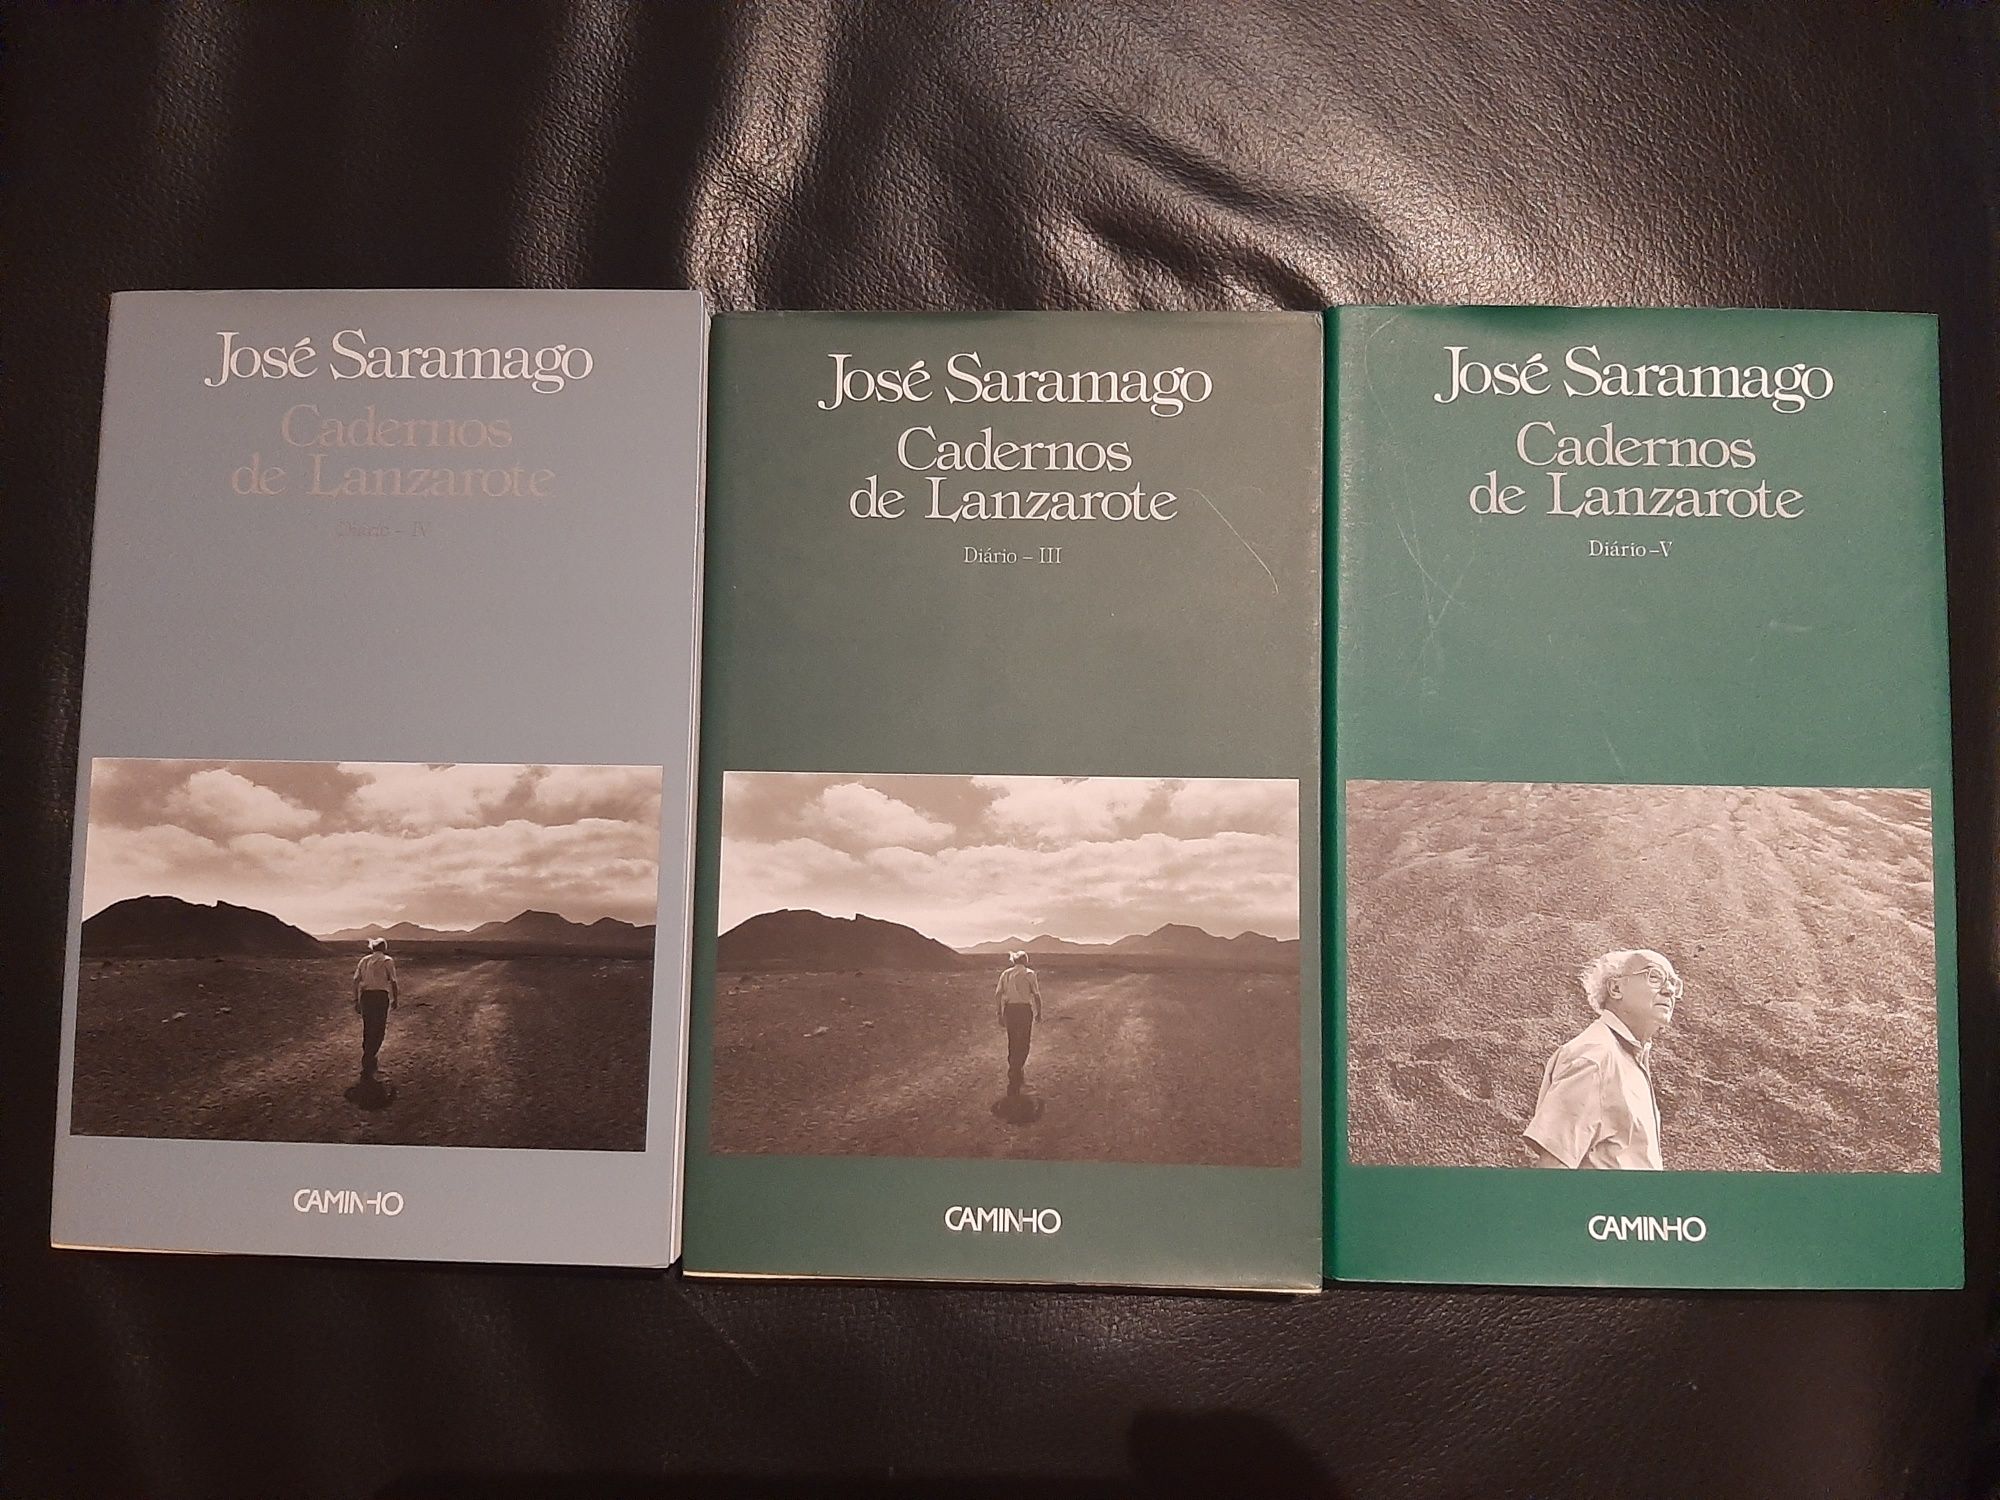 José Saramago cadernos lanzarote caminho